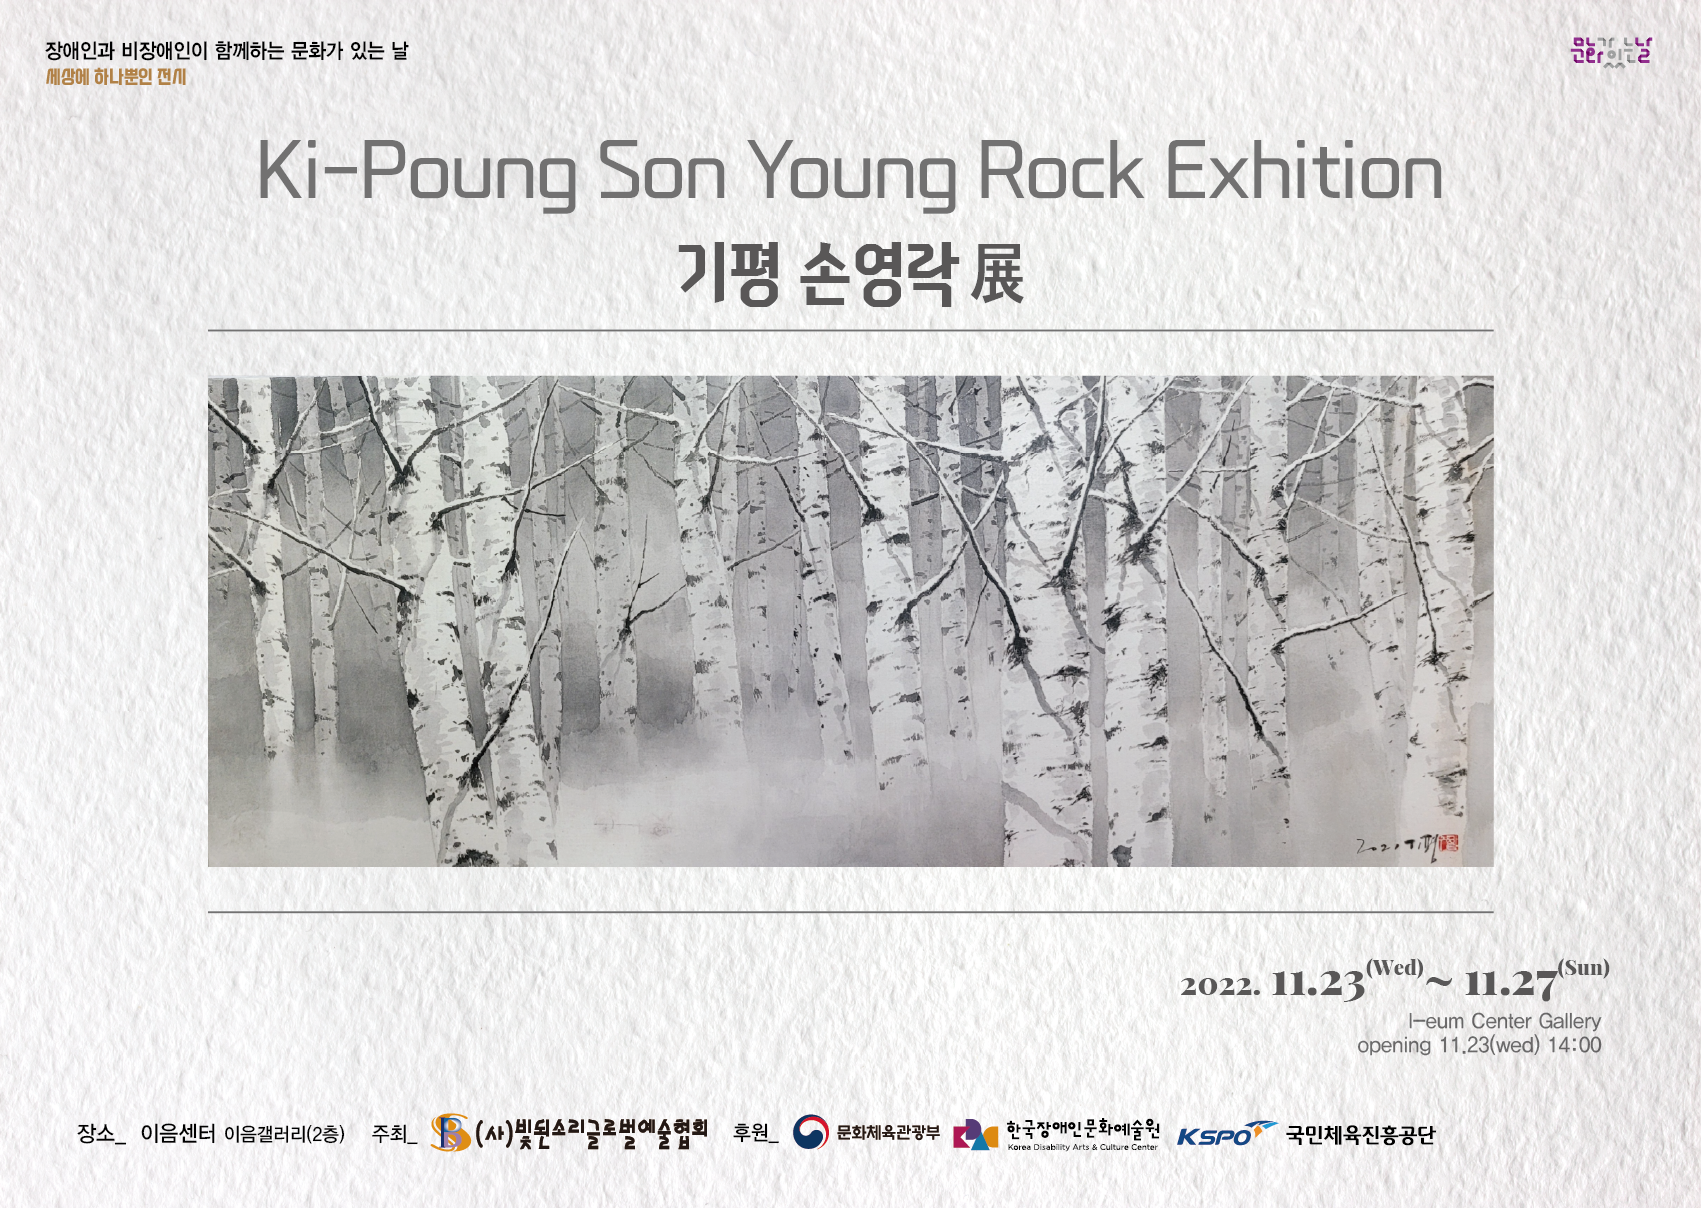 장애인과 비장애인이 함께하는 문화가 있는 날 세상에 하나뿐인 전시 Ki-Poung Son Young Rock Exhition 기평 손영락展 2022. 11.23 - 11.27 I-eum Center Gallery opening 11.23(wed) 14:00 장소_ 이음센터 이음갤러리(2층) 주최 (사)빛된소리글로벌예술협회 후원 후원 문화체육관광부 한국장애인문화예술원 KSPO 국민체육진흥공단